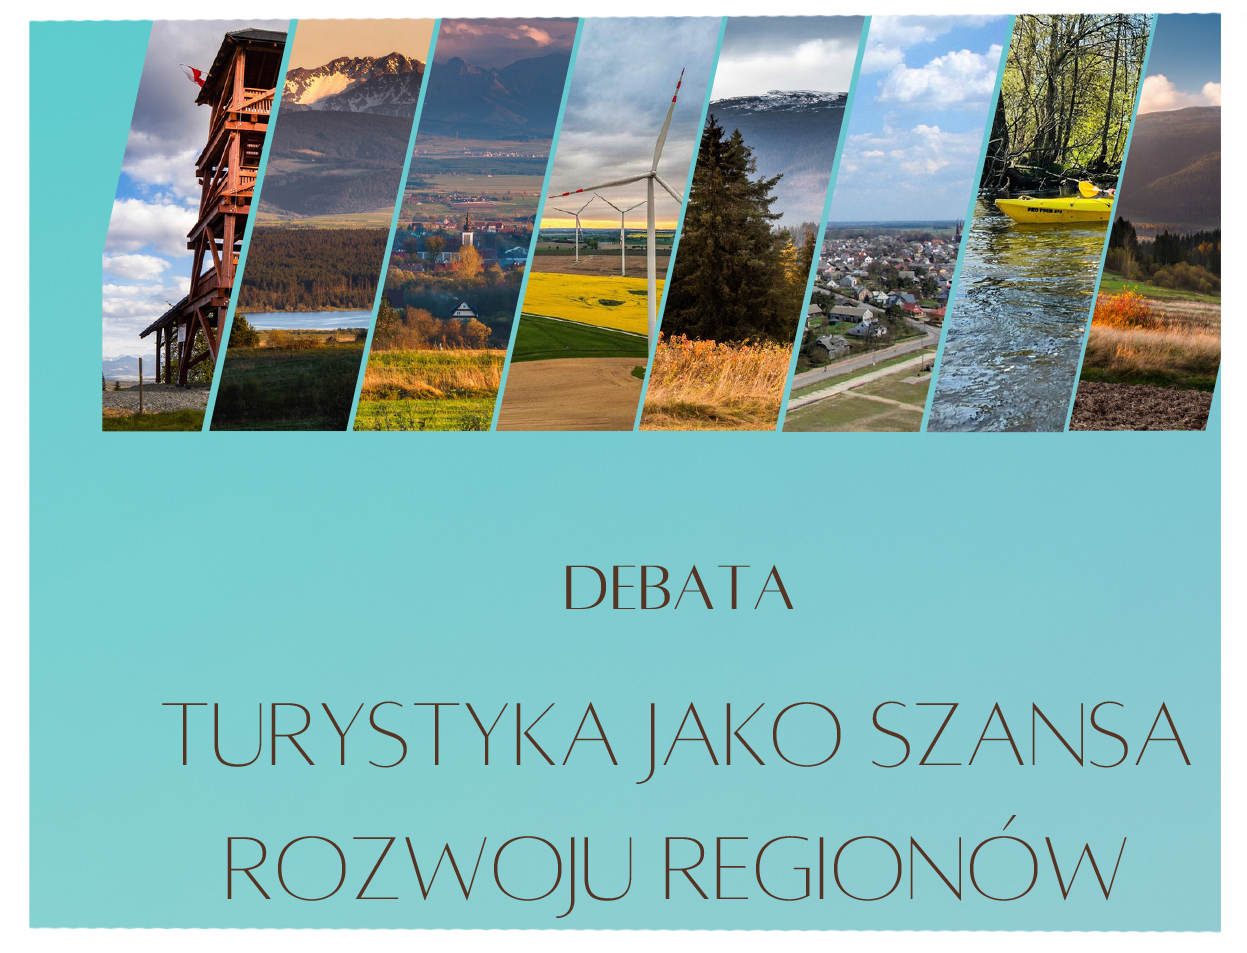 Debata pt. "Turystyka jako szansa rozwoju regionów"